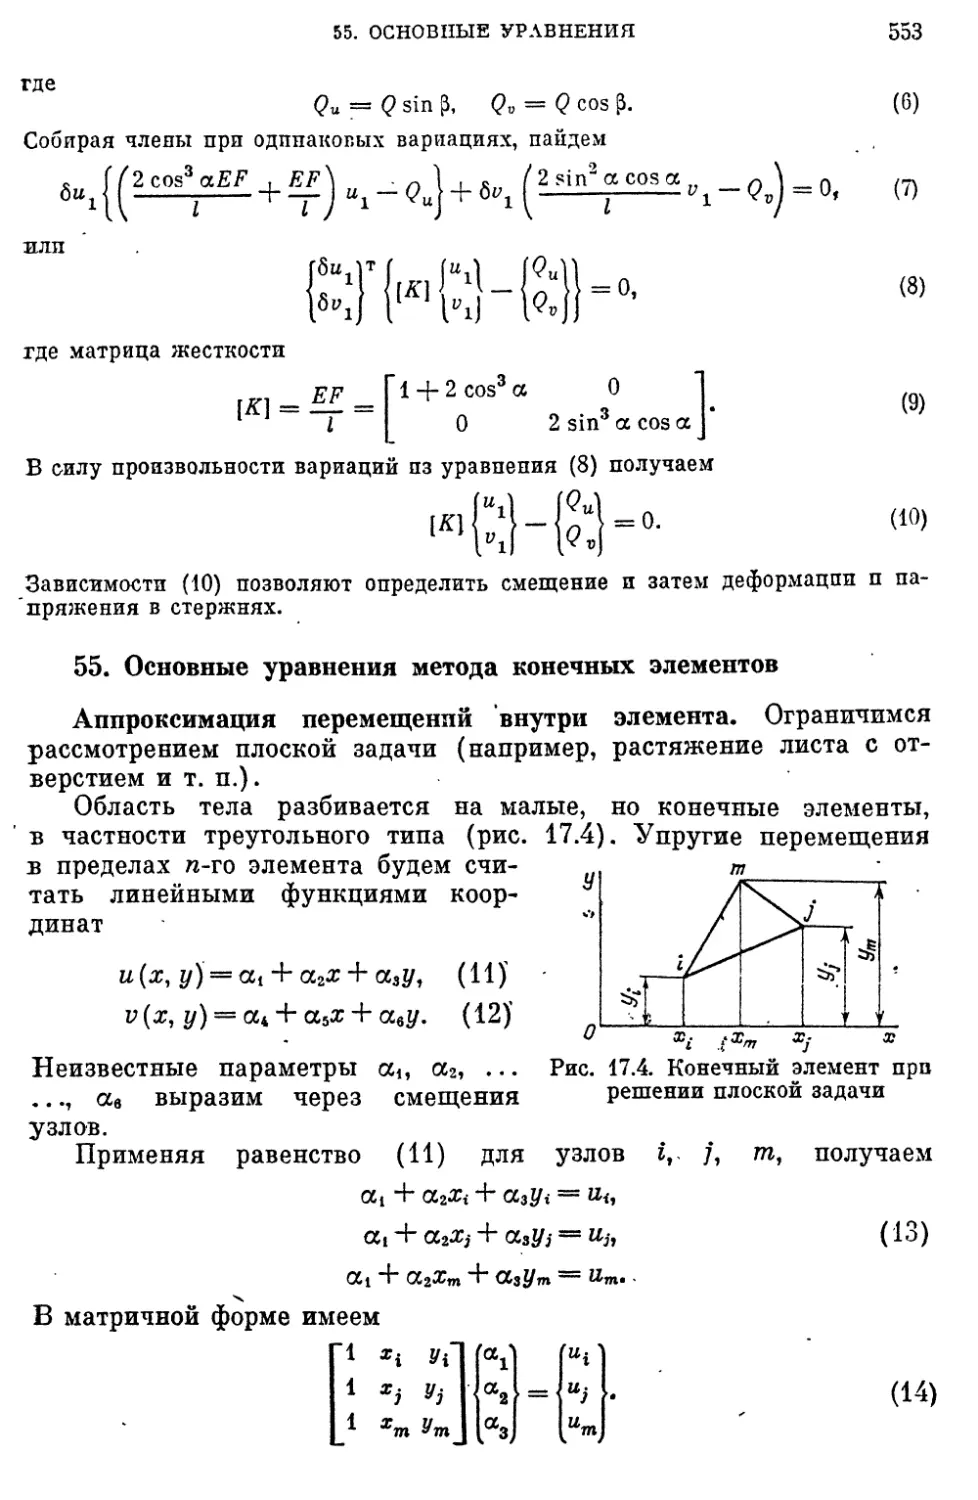 55. Основные уравнения метода конечных элементов